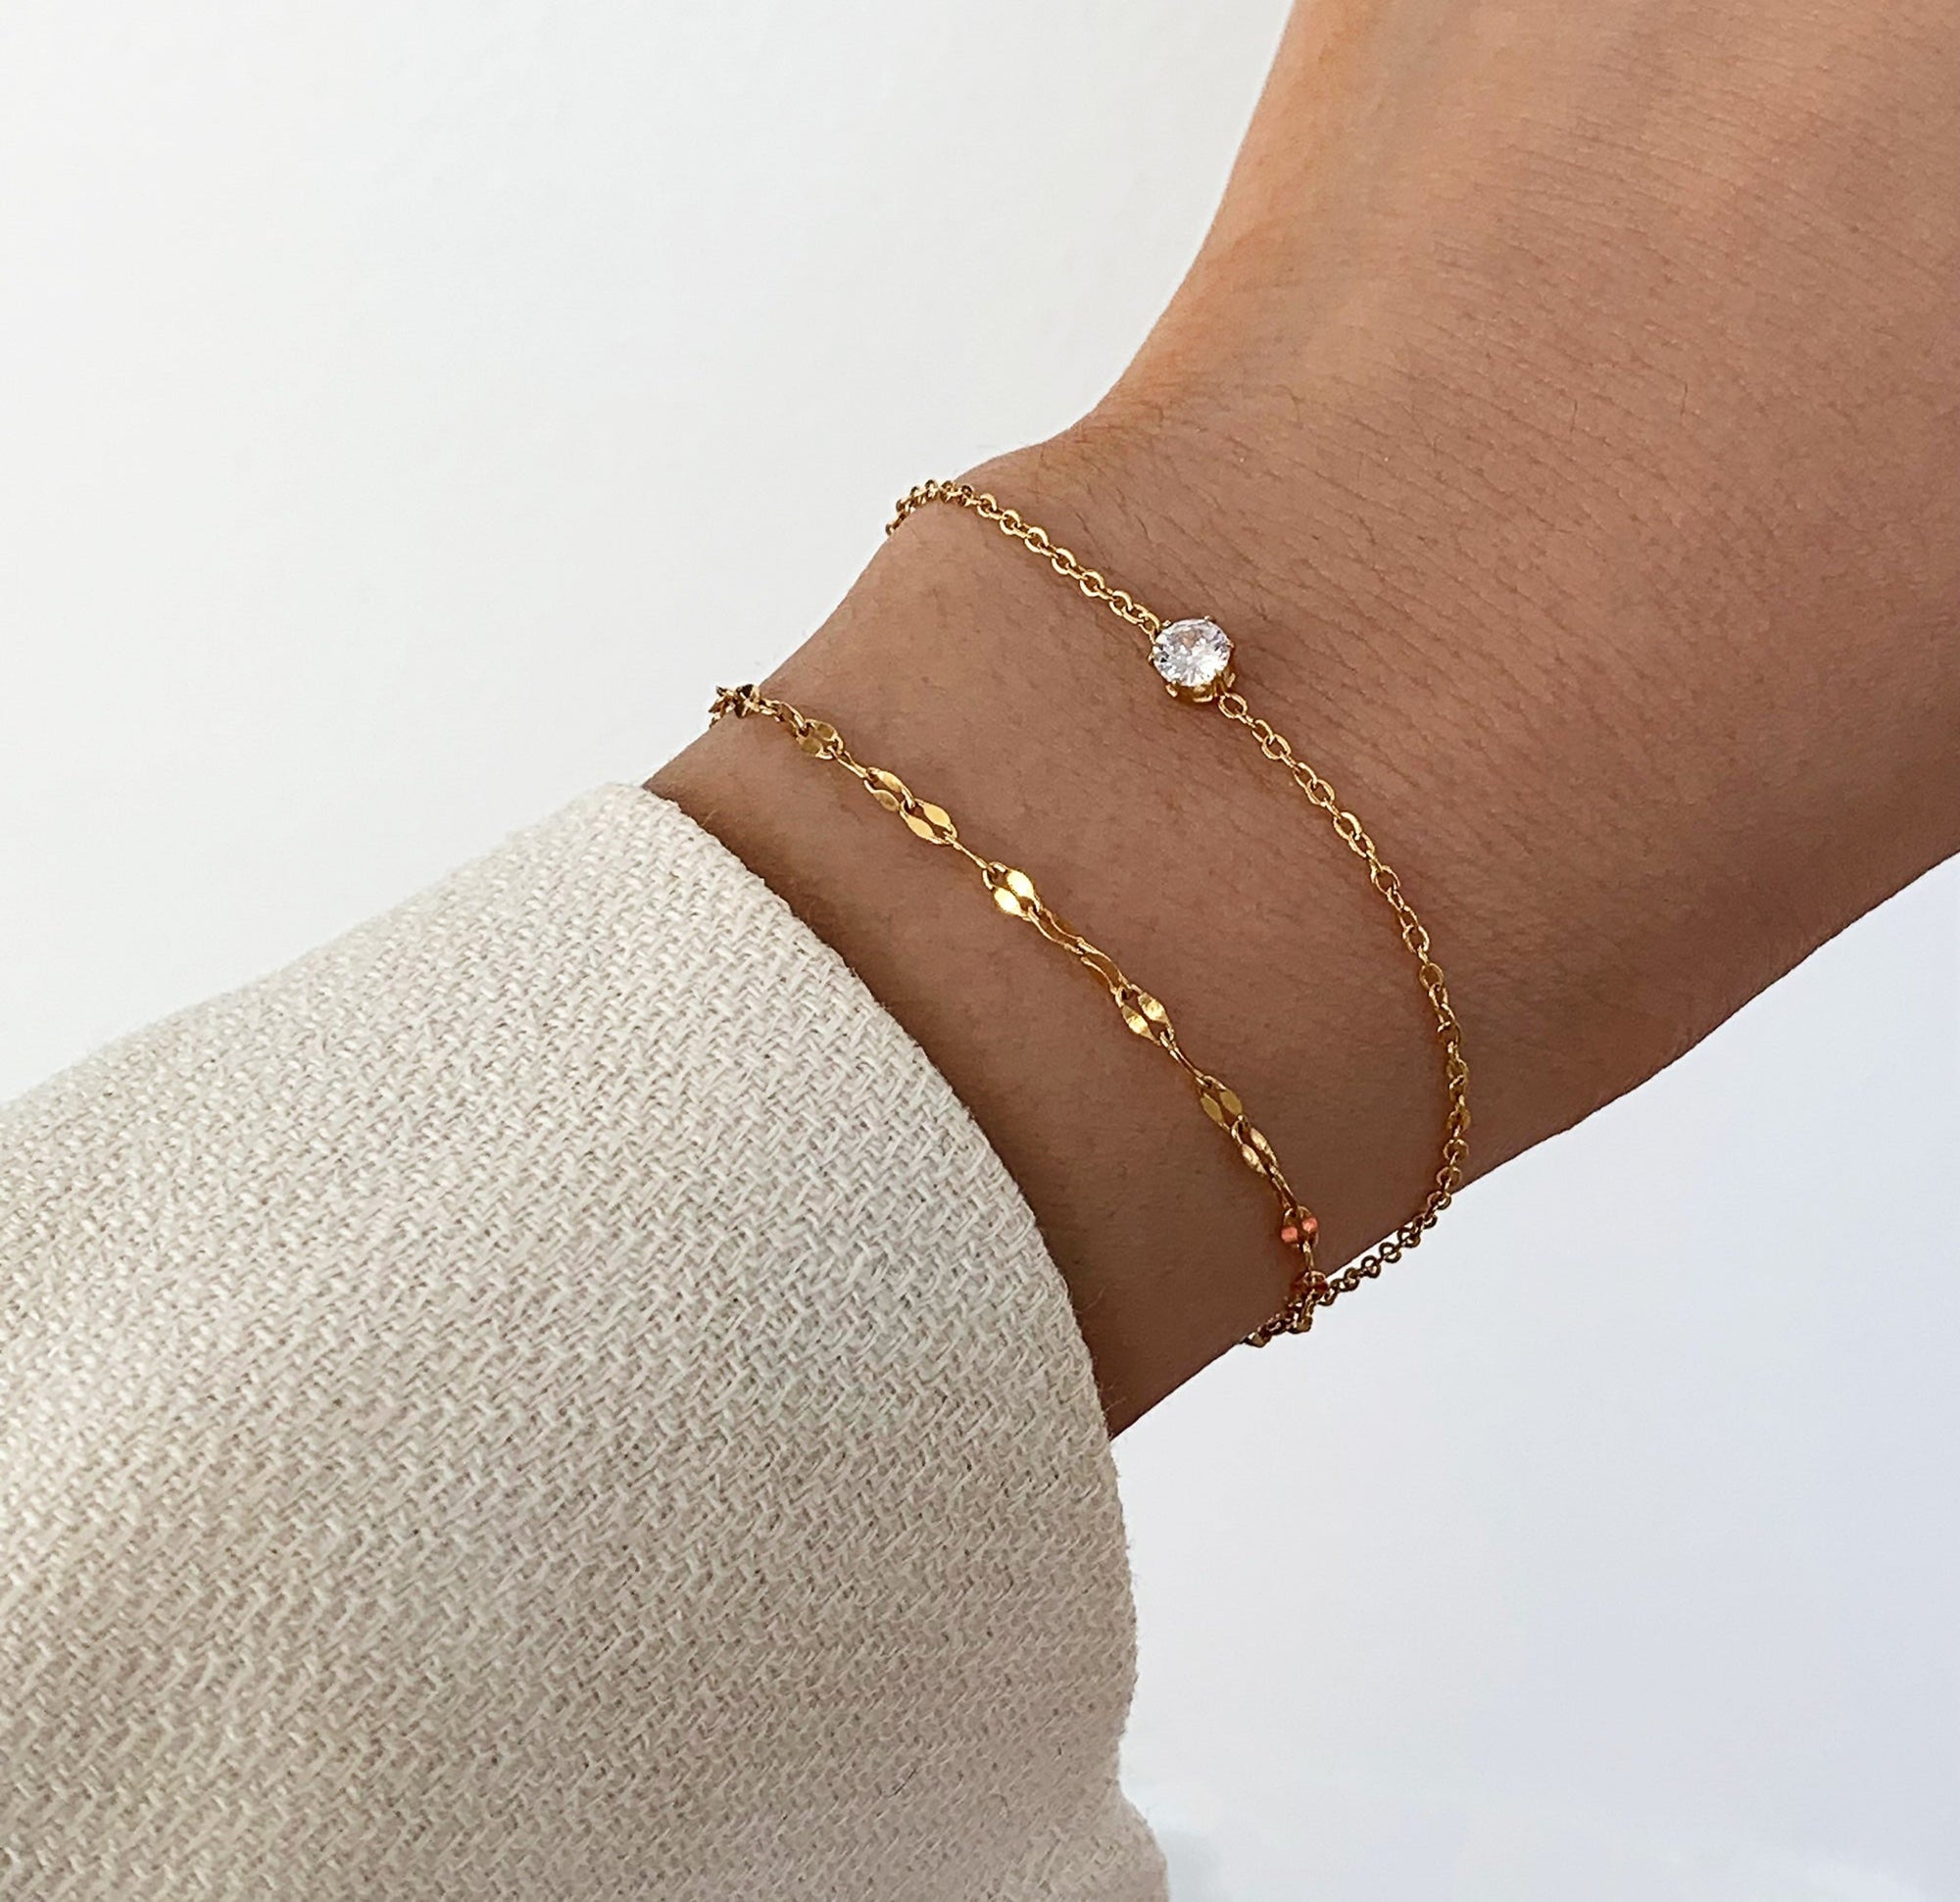 gold bracelet waterproof jewelry